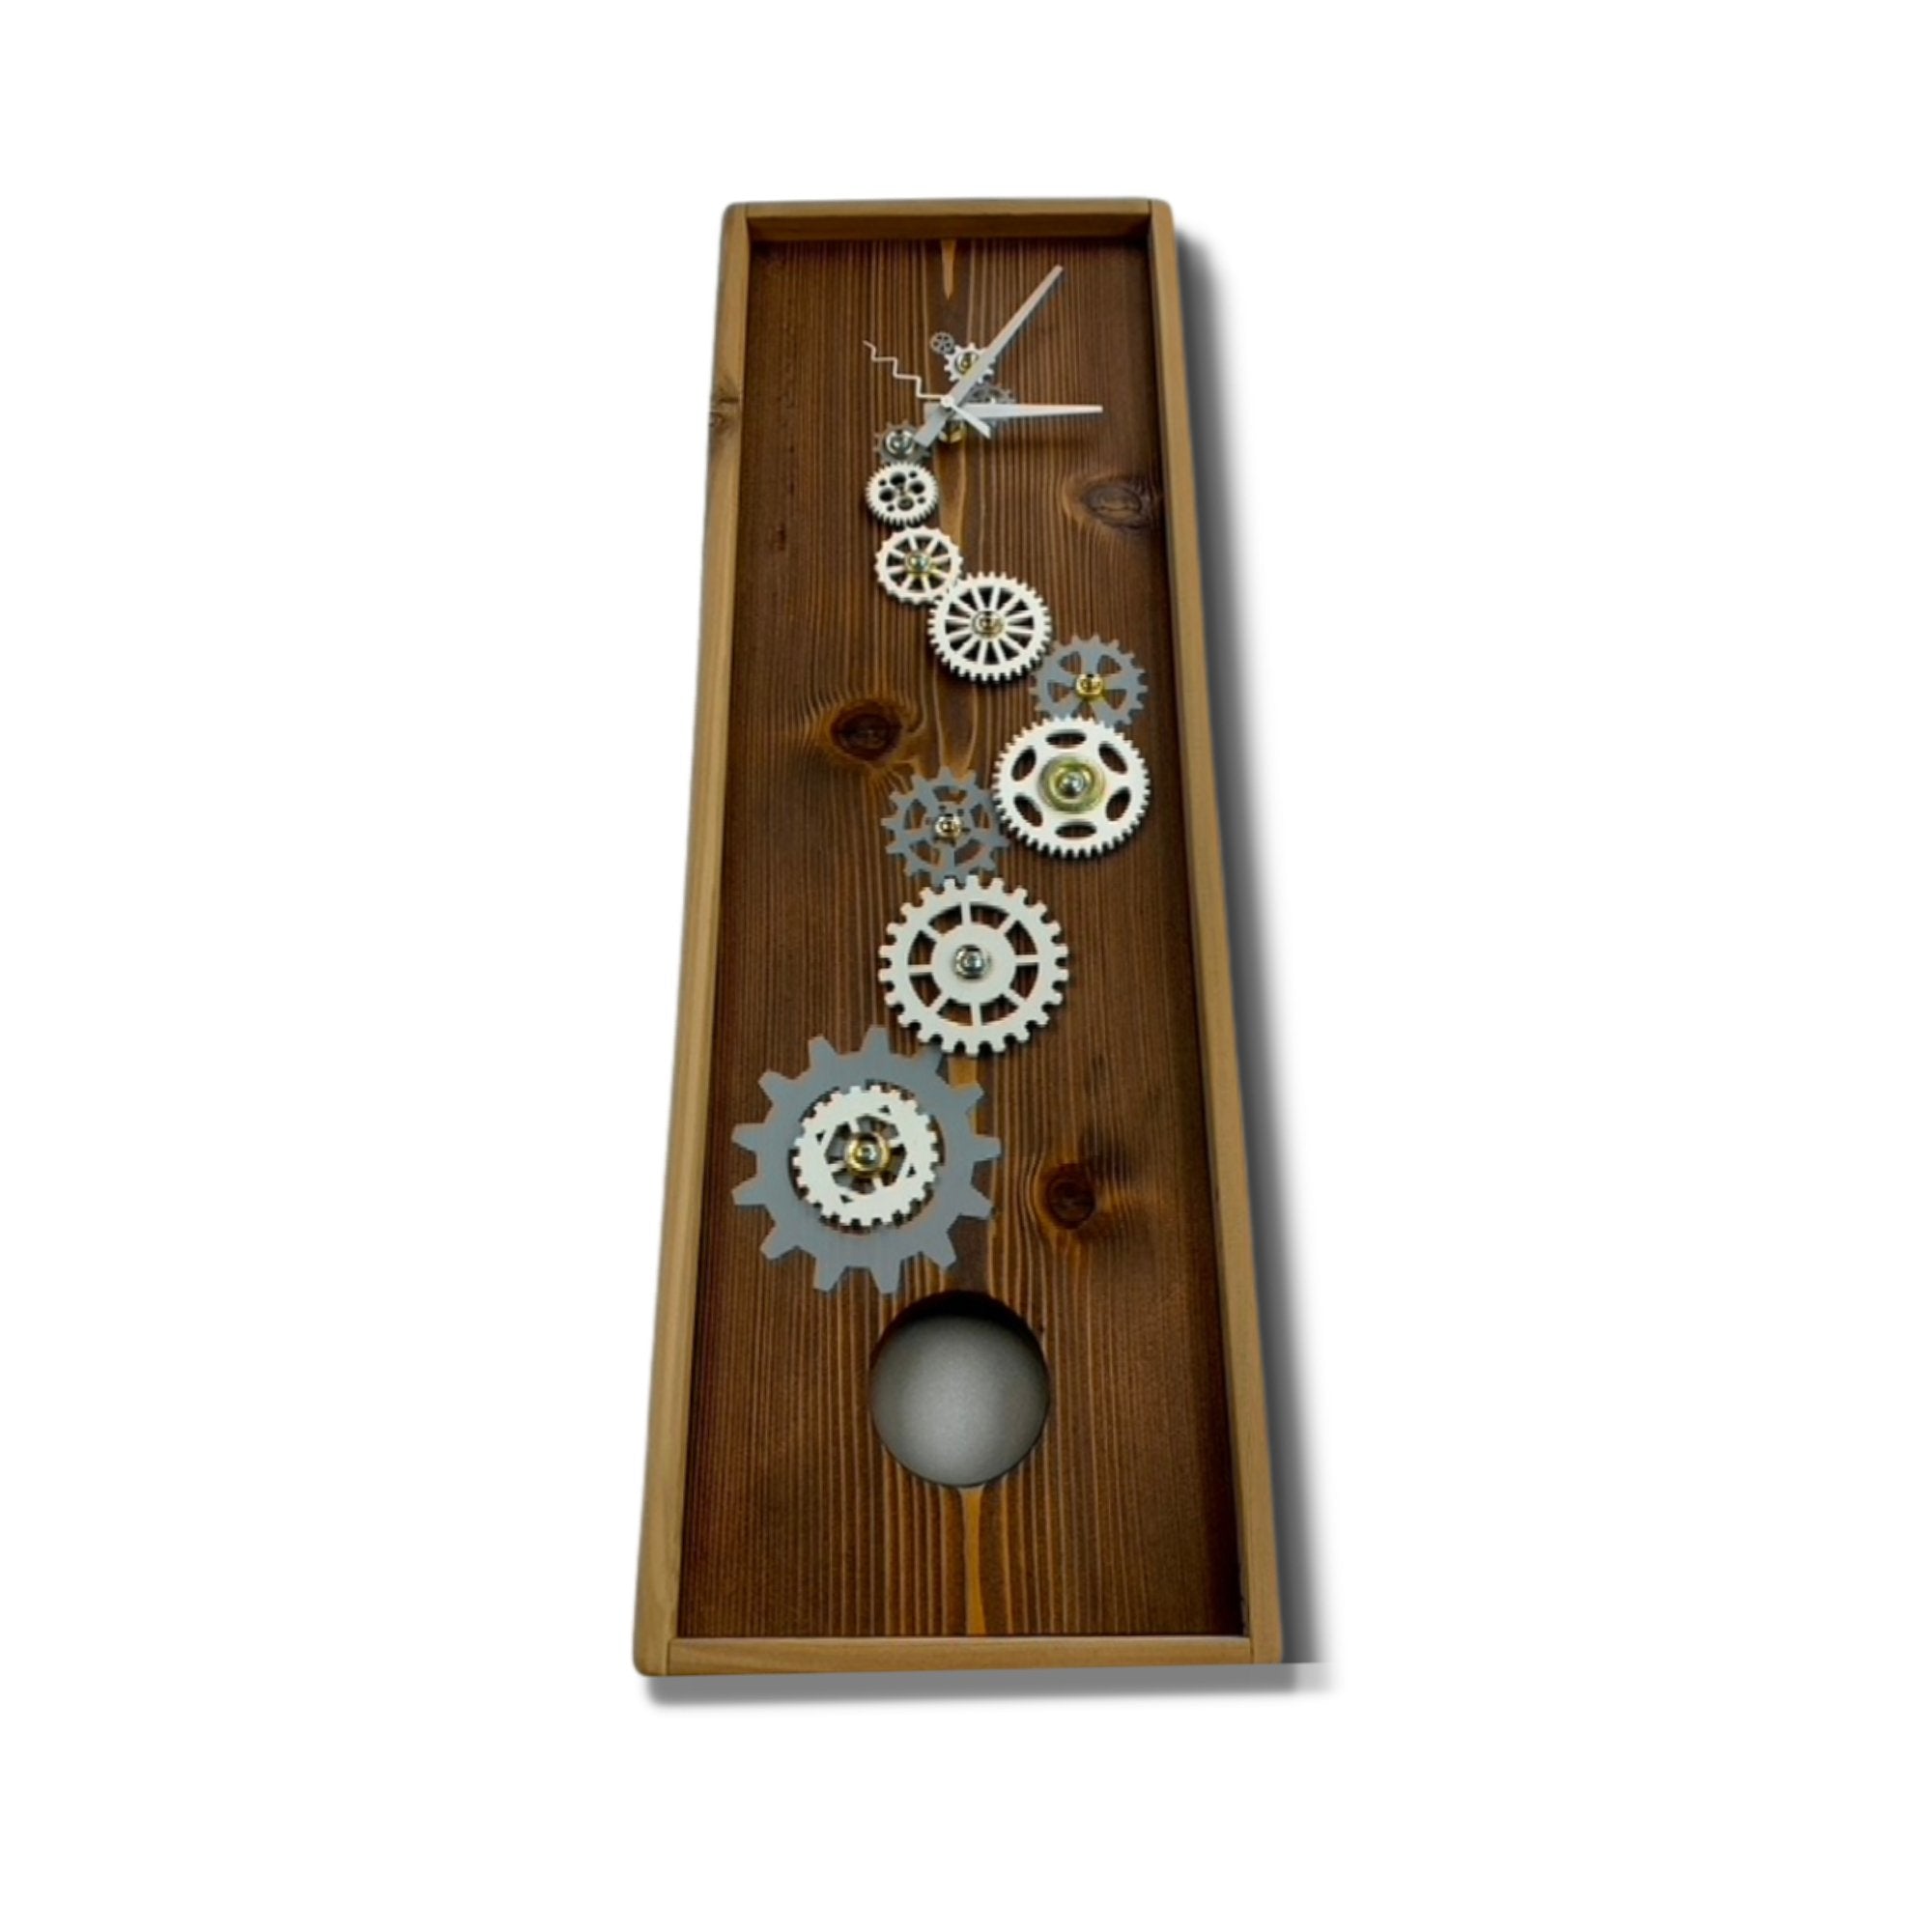 KingWood Pendulum Wall Clock w/ Gears, Cedar & Silver from base